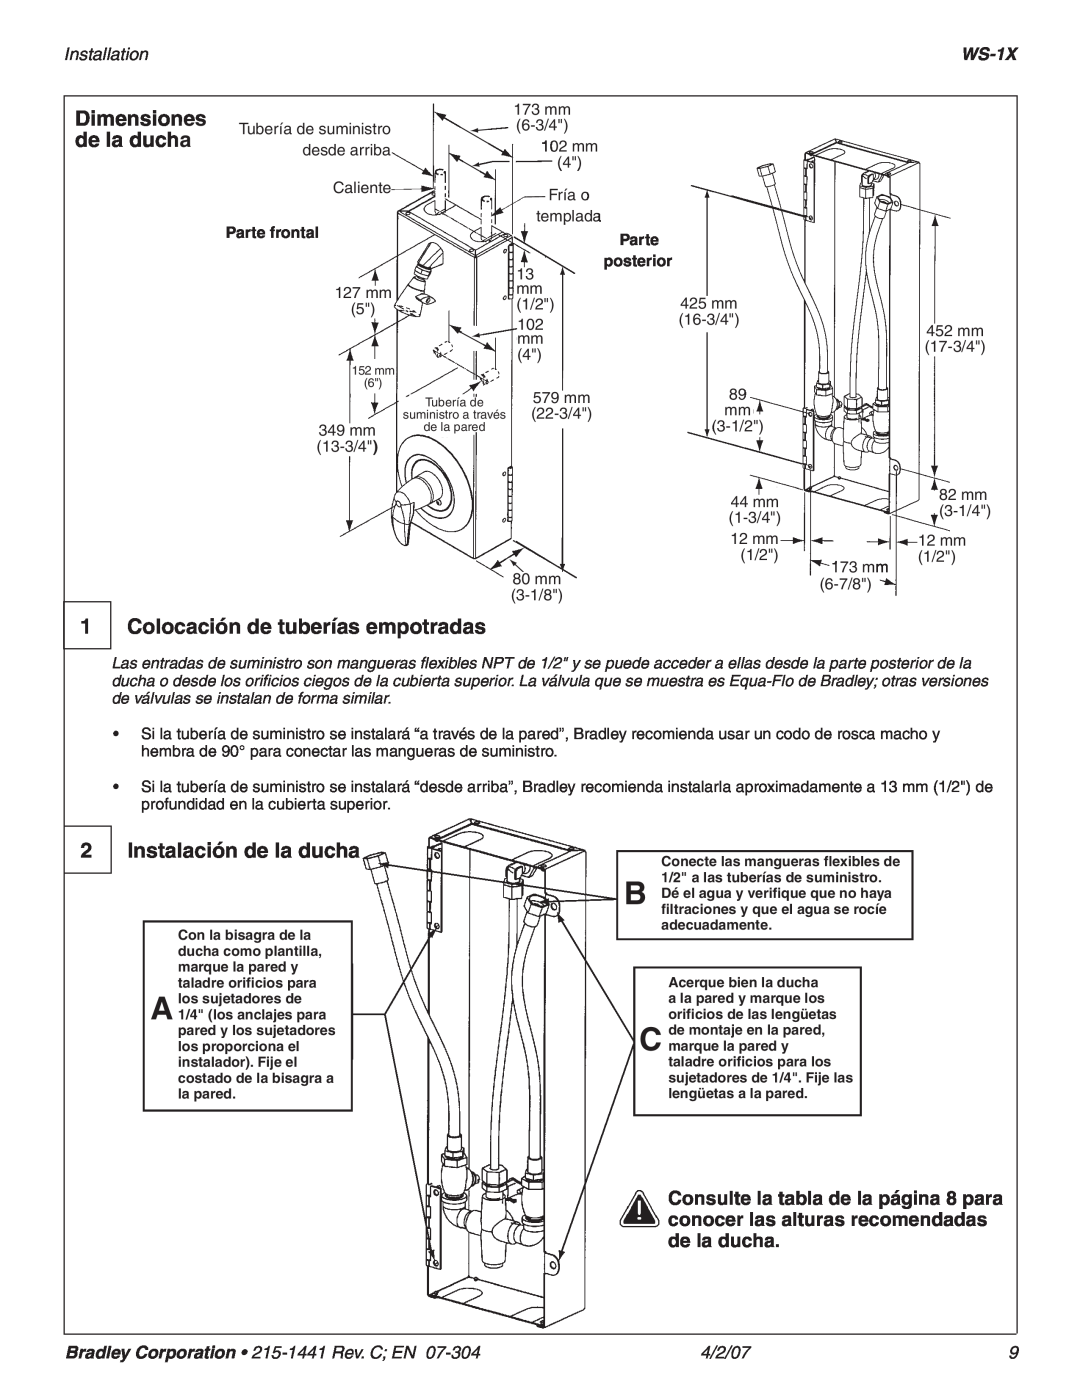 Bradley Smoker WS-1X Colocación de tuberías empotradas, Instalación de la ducha, Installation, 4/2/07, Dimensiones, Parte 